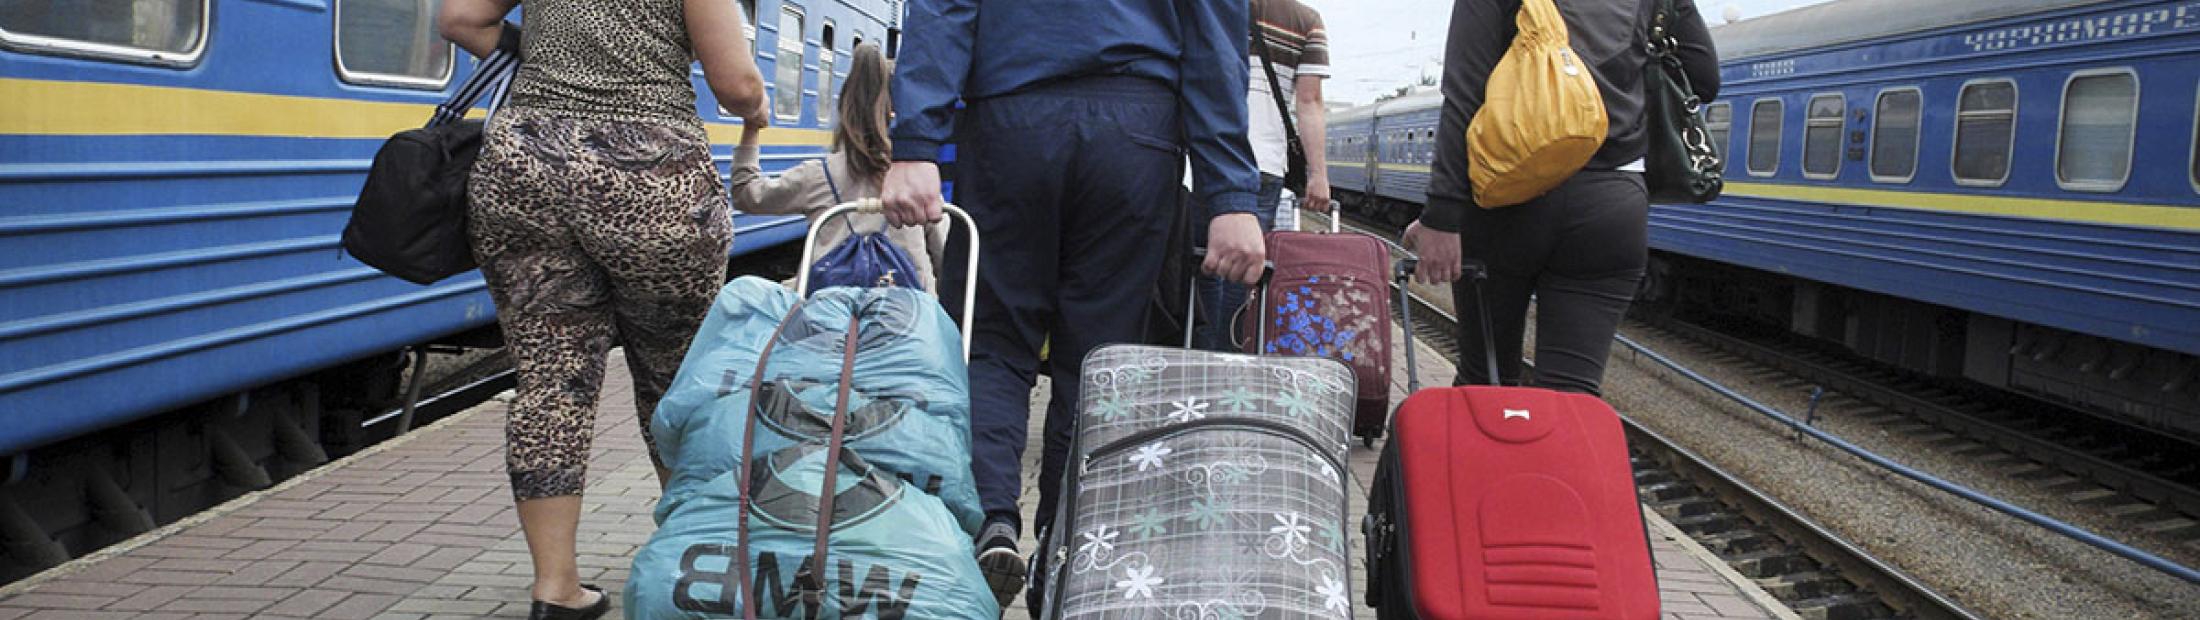 Miles de personas siguen huyendo de sus casas por la violencia en Ucrania